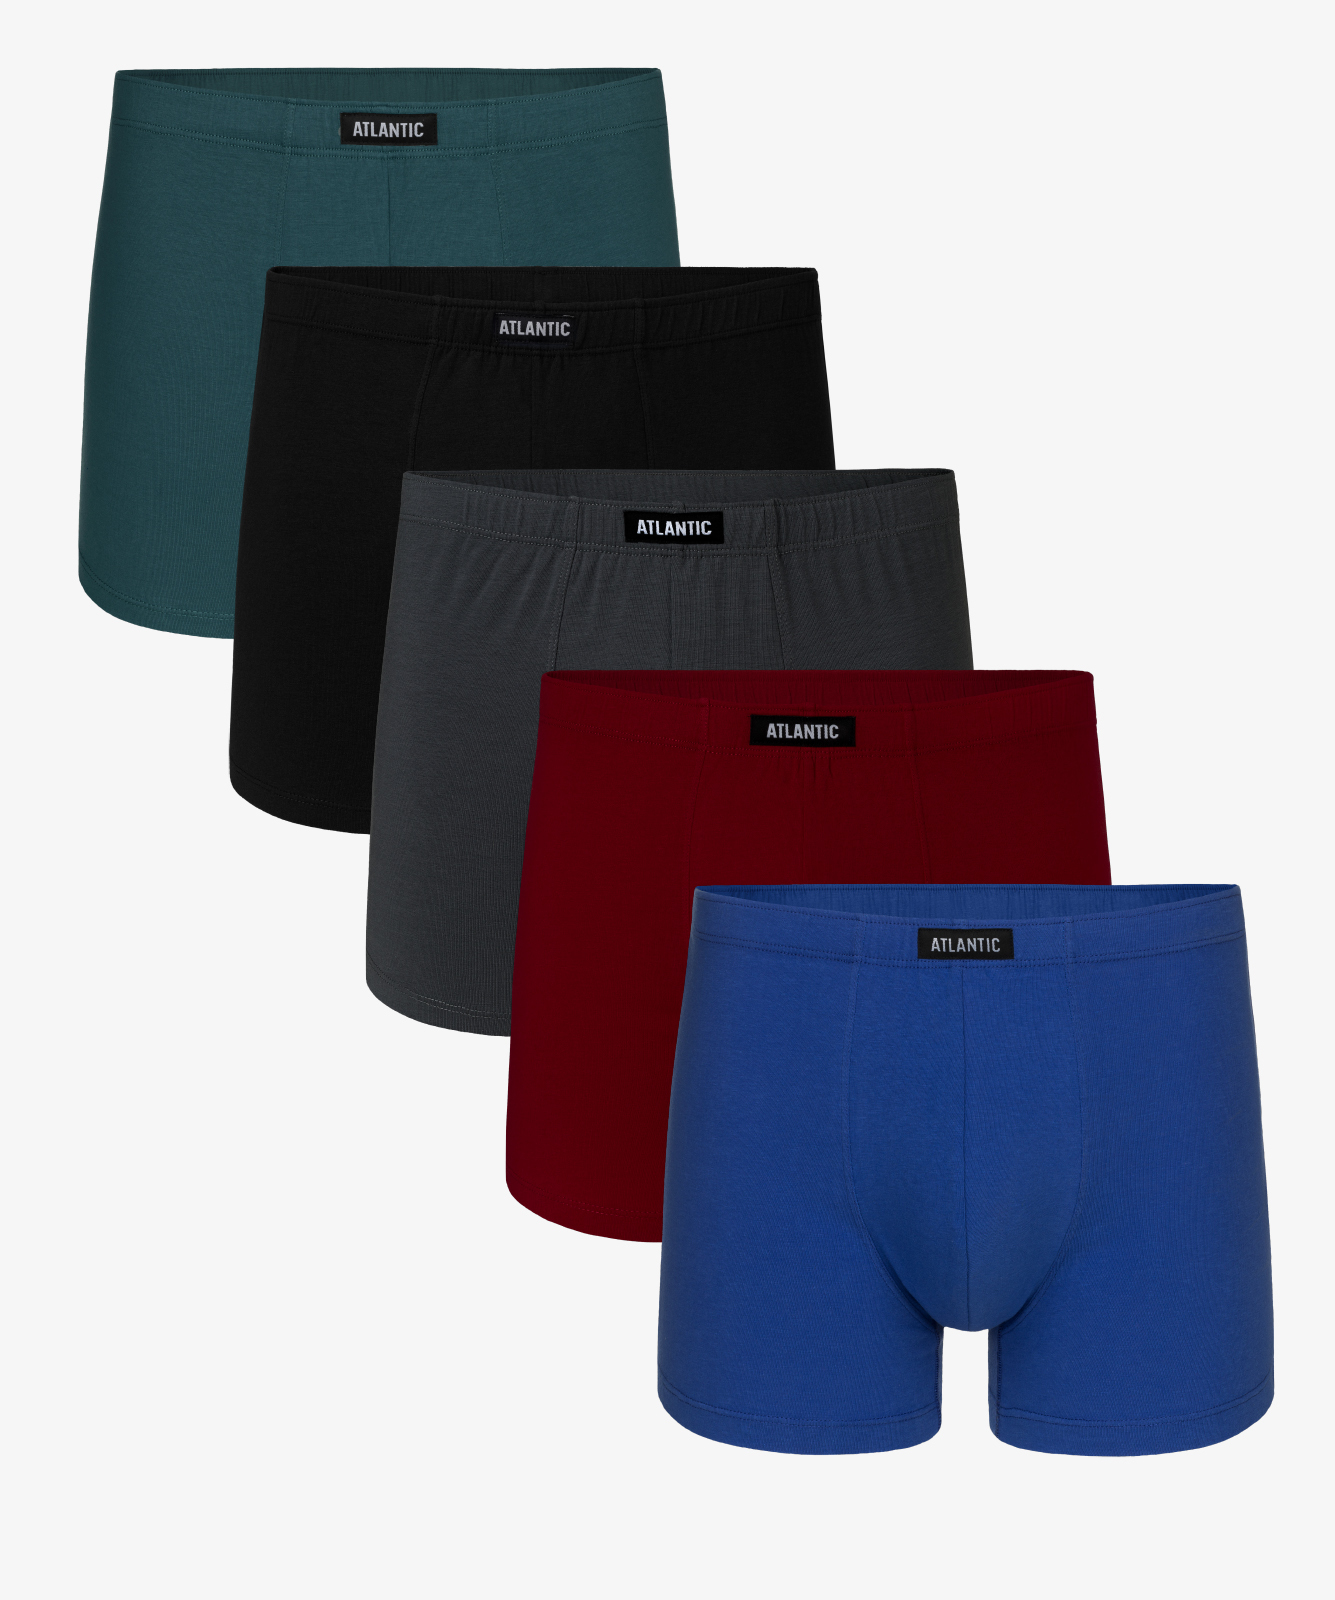 Мужские трусы шорты Atlantic, набор из 5 шт., хлопок, зеленые + черные + графит + бургунди + голубые, 5SMH-002